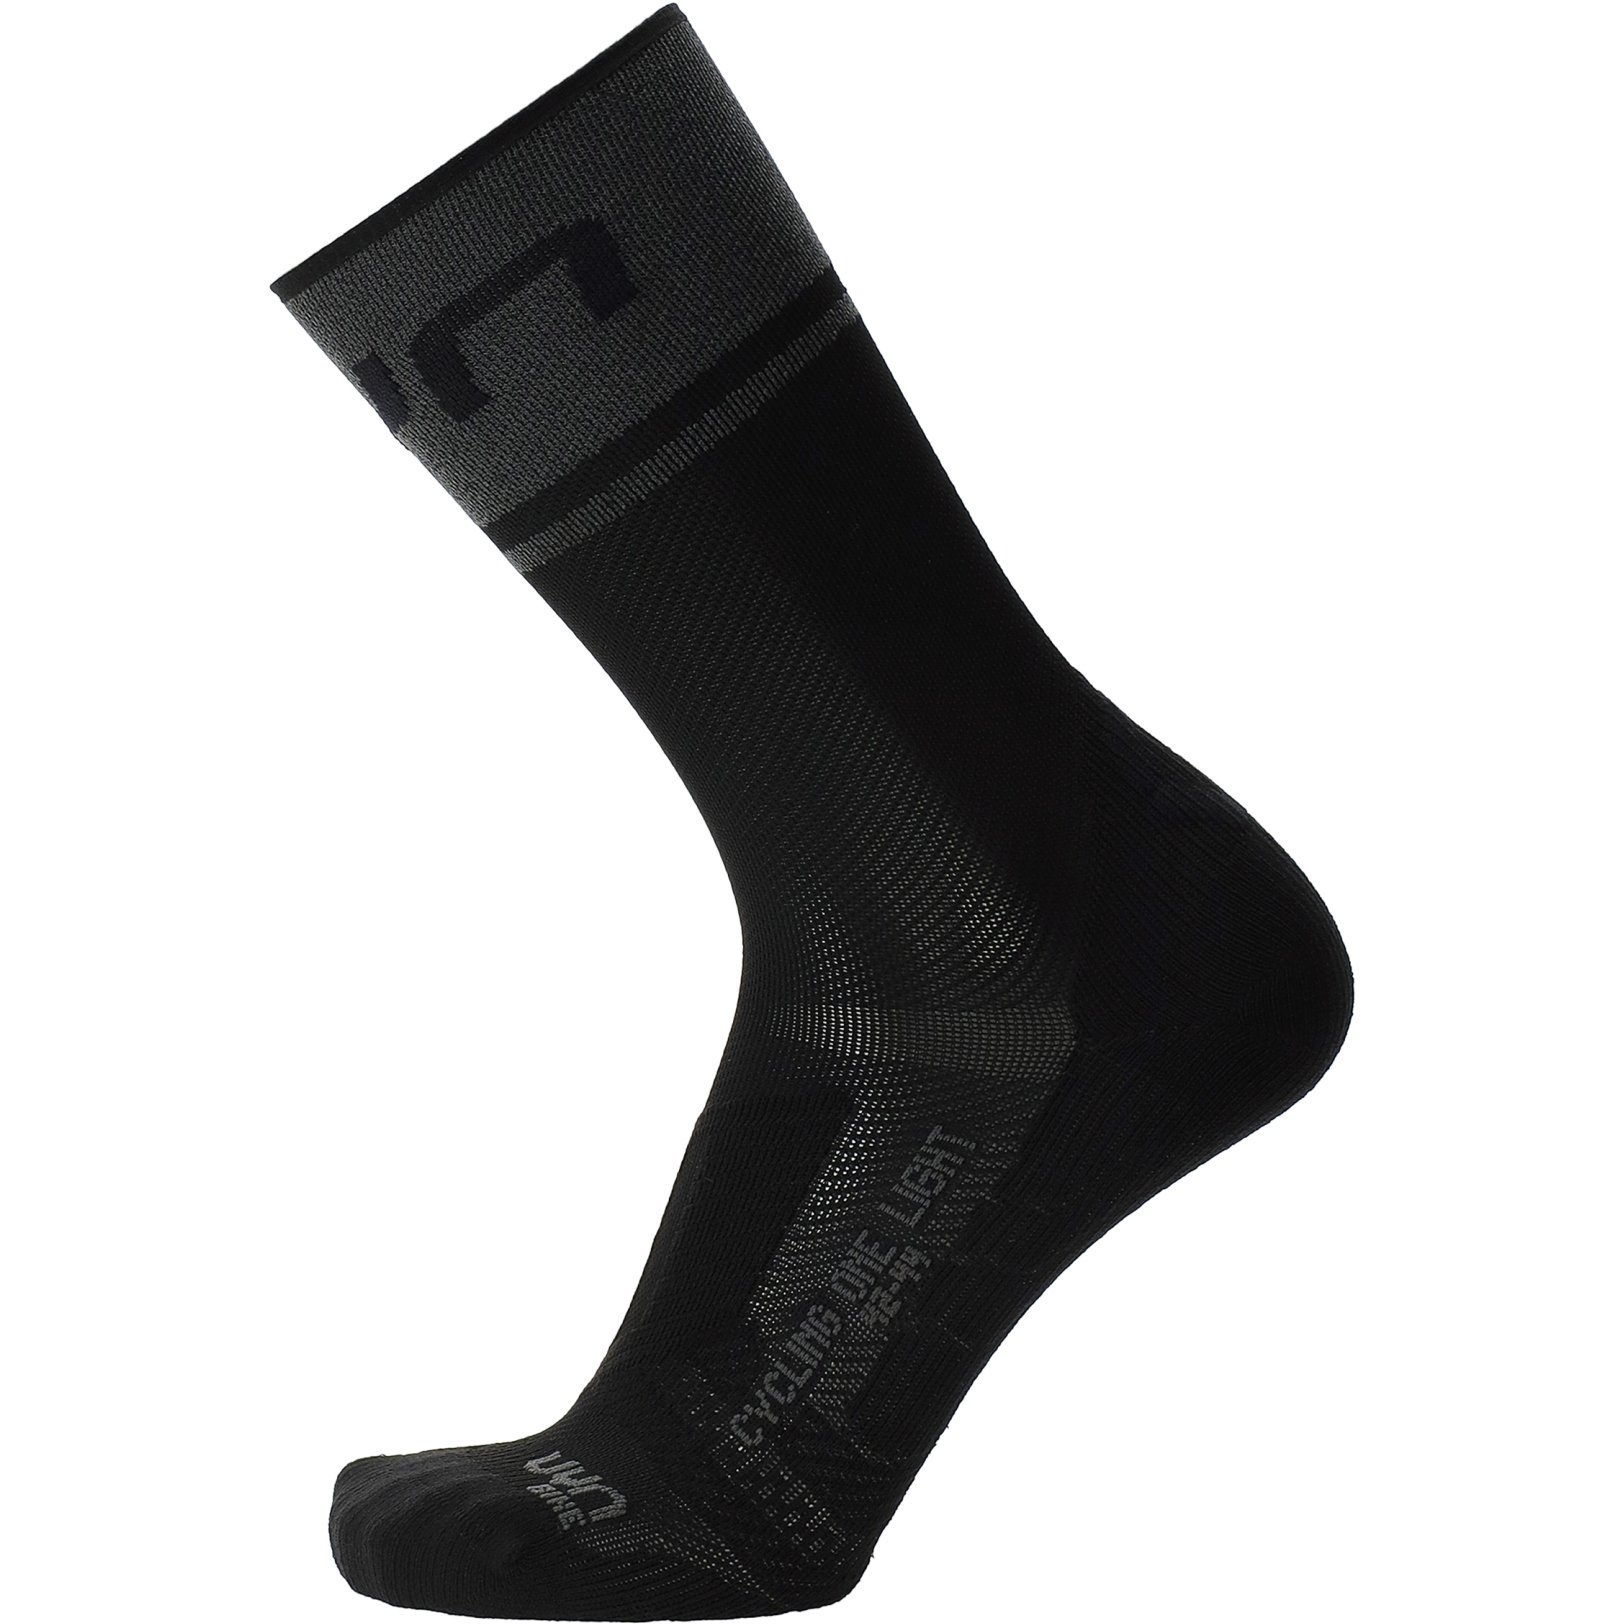 Produktbild von UYN Cycling One Light Socken Herren - Black/Anthracite